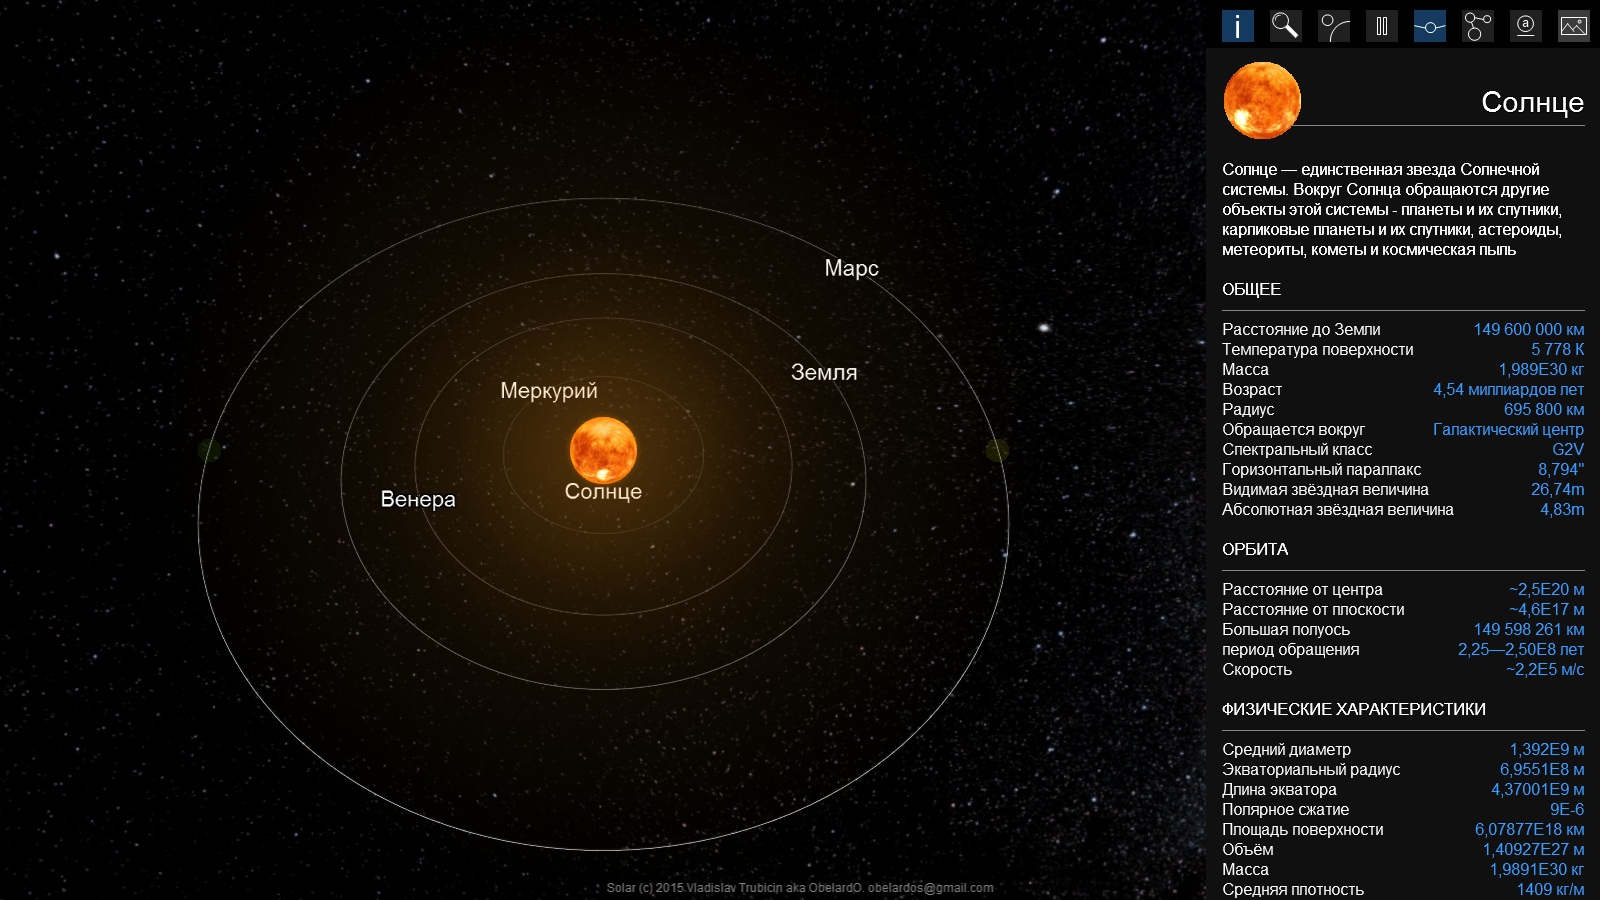 Сколько км планета. Удалённость от солнца Меркурия. Обращение планет вокруг солнца. Меркурий расстояние от солнца. Форма орбиты Марса.